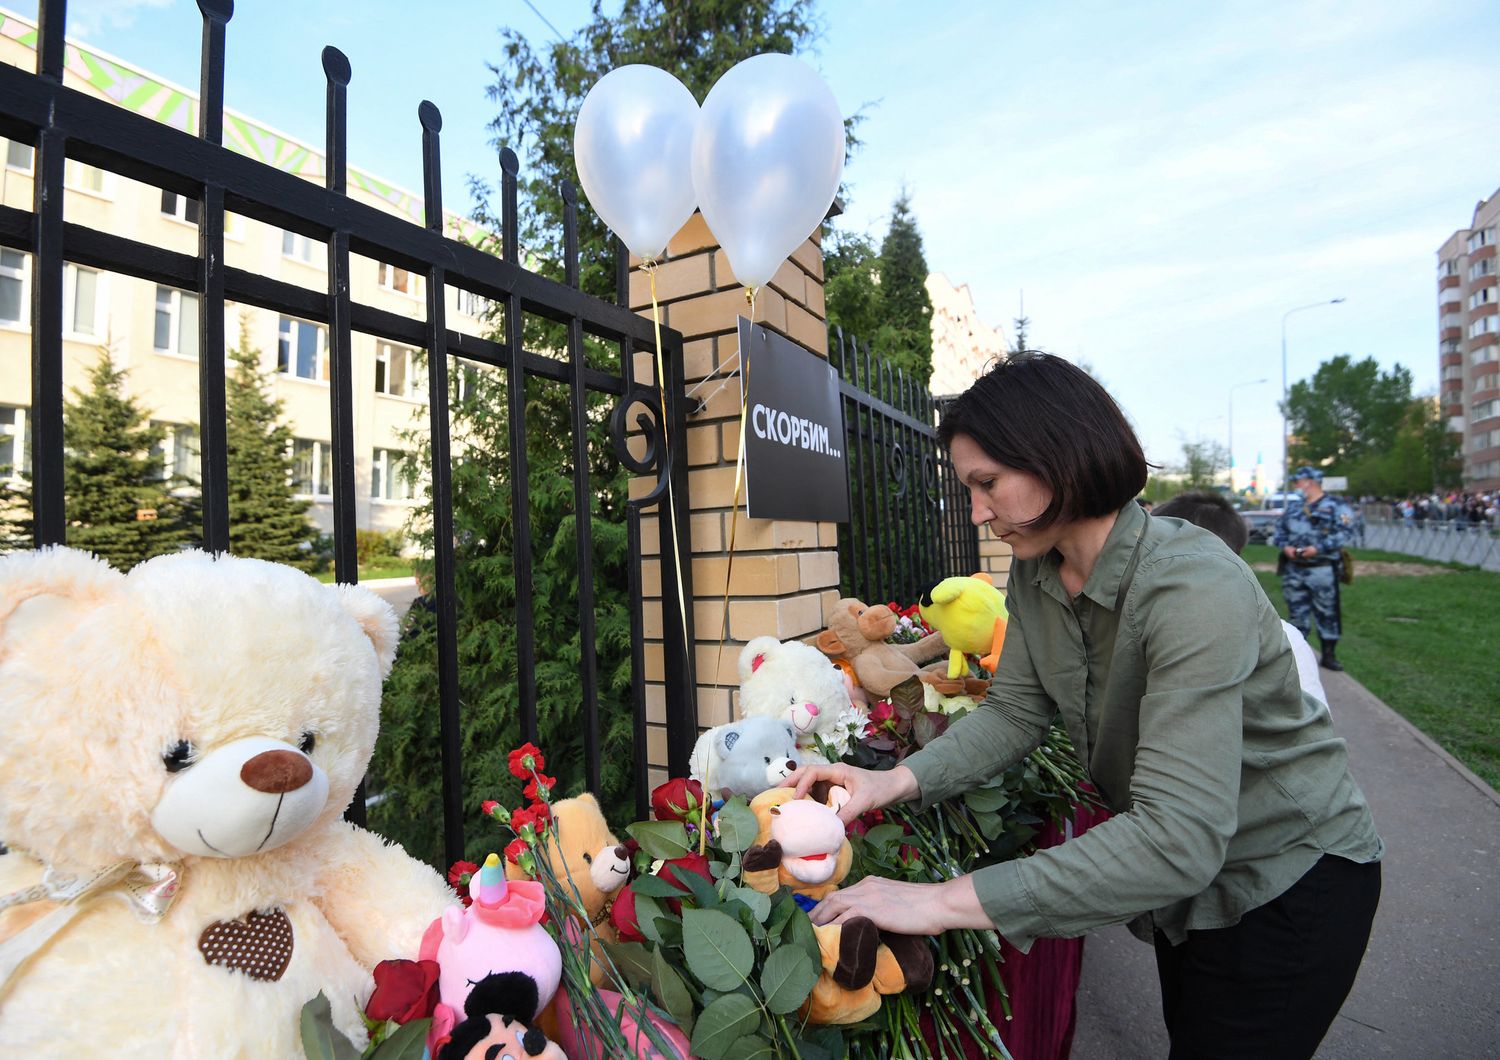 Pupazzi e fiori lasciati davanti alla scuola di Kazan teatro di una sparatoria. Almeno 9 i morti